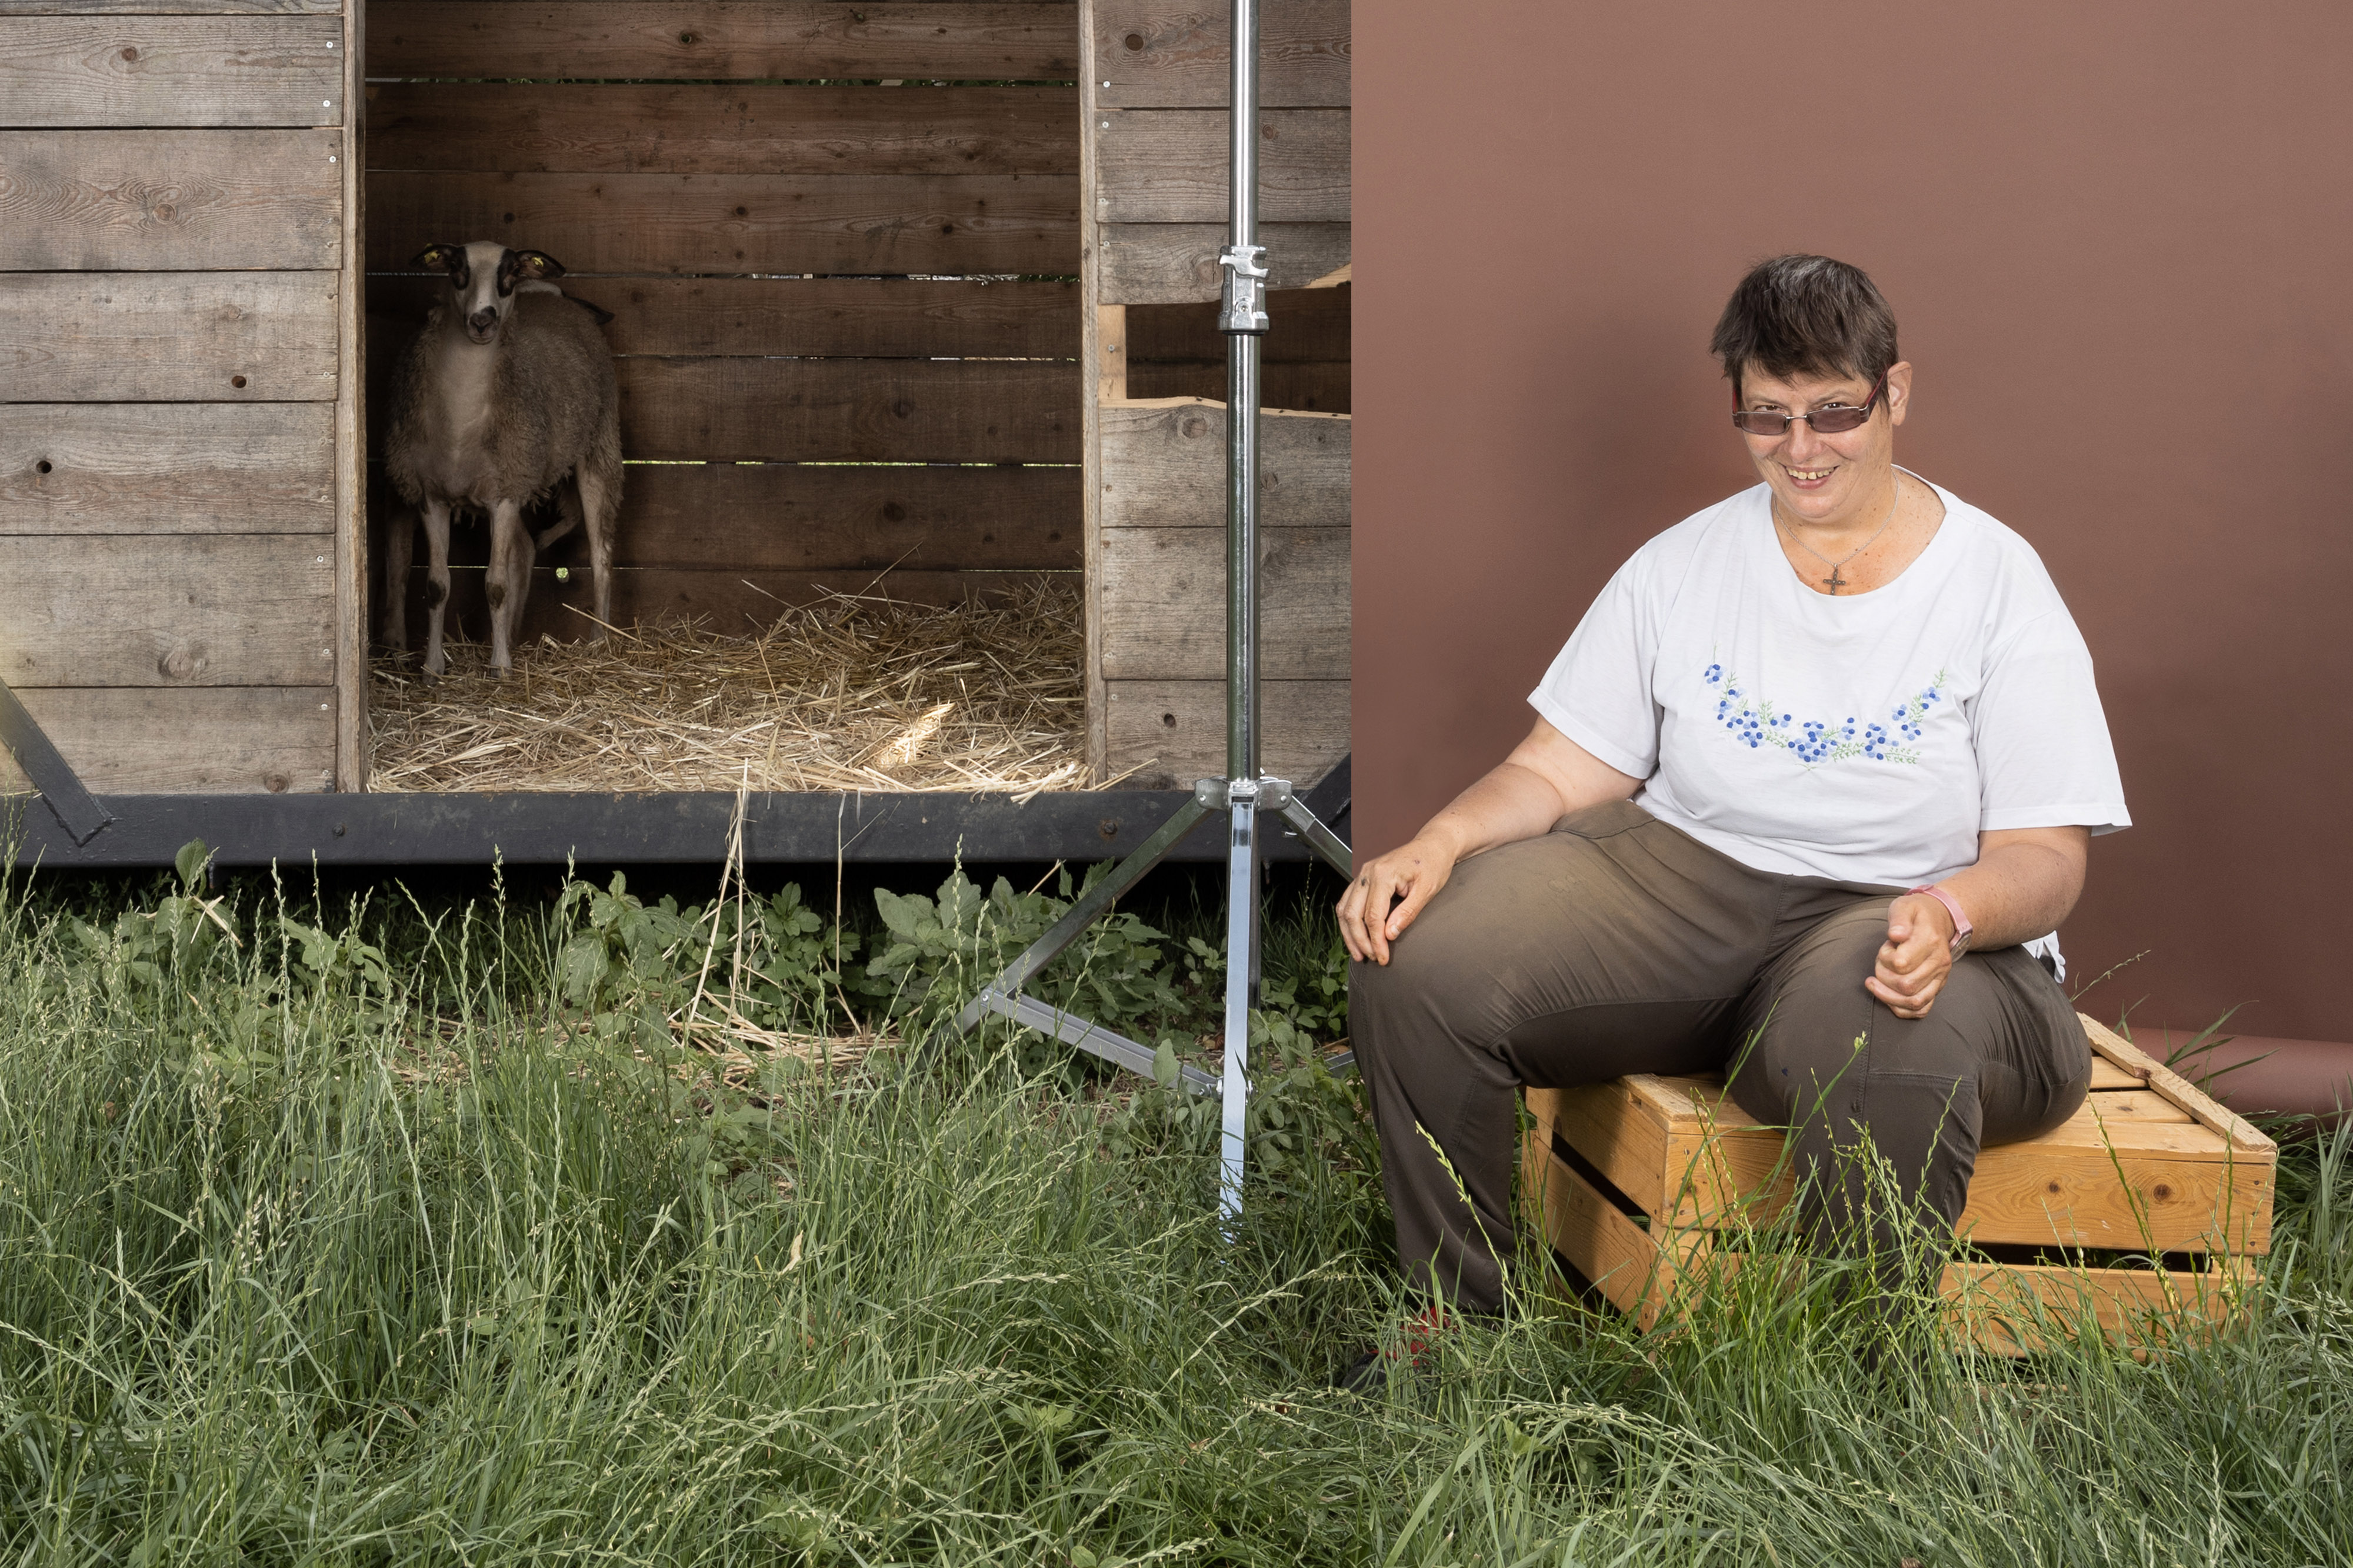 Ein Foto aus dem Buch "Ohne Milch und Zucker". Rechts sitzt Nicole Leuenberger auf einer Holzkiste vor einer brauenen Leinwand, links daneben sieht man ein Schaf.